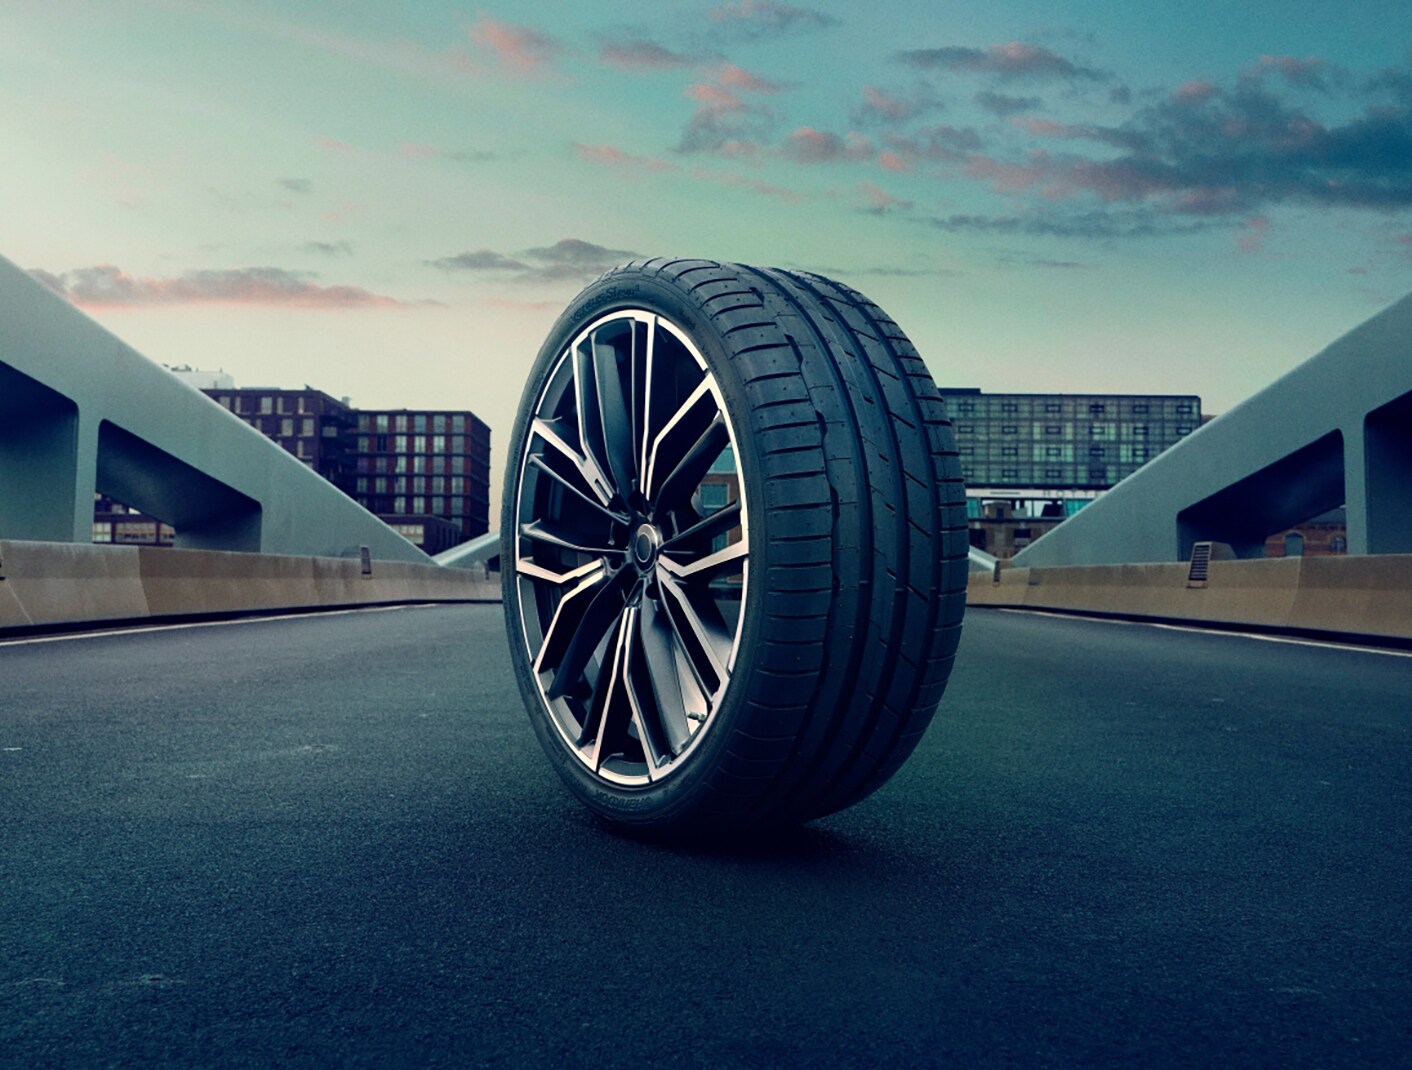 O Hankook Ventus S1 evo 3 vence teste de distância de frenagem no maior teste de pneus de verão da Europa, realizado pela revista automotiva Auto Bild